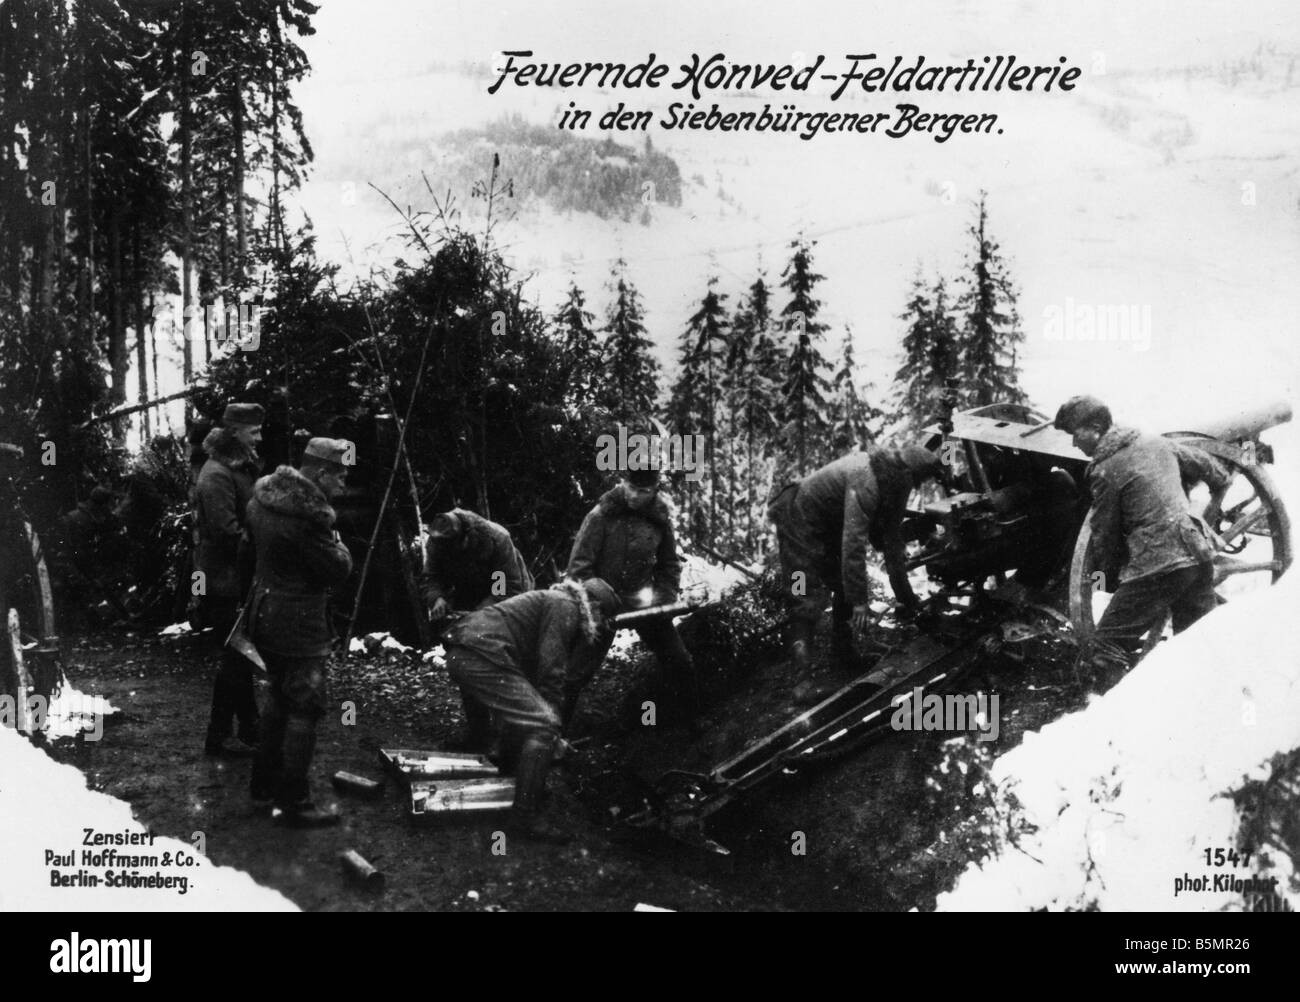 9 1917 1 0 A1 E Honved field artillery, Sieben mont Guerre Mondiale 1 août 1916 Campagne roumaine Roumanie Janvier 1917 Député de tir Banque D'Images